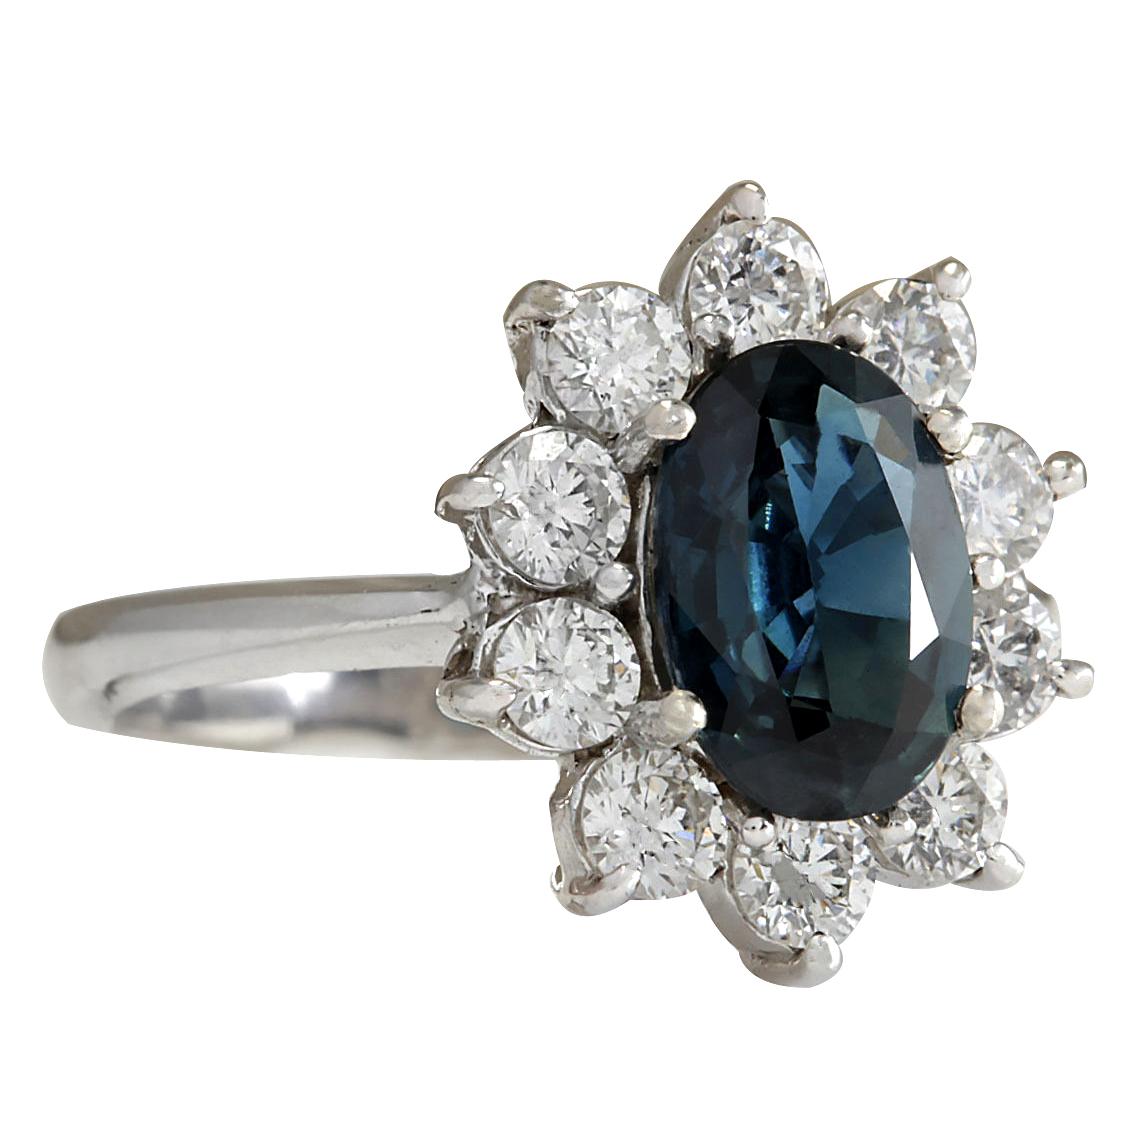 3.12 Carat Natural Sapphire 14 Karat White Gold Diamond Ring
Stamped: 14K White Gold
Total Ring Weight: 4.4 Grams
Total Natural Sapphire Weight is 2.11 Carat (Measures: 9.00x7.00 mm)
Color: Blue
Total Natural Diamond Weight is 1.01 Carat
Color: F-G,